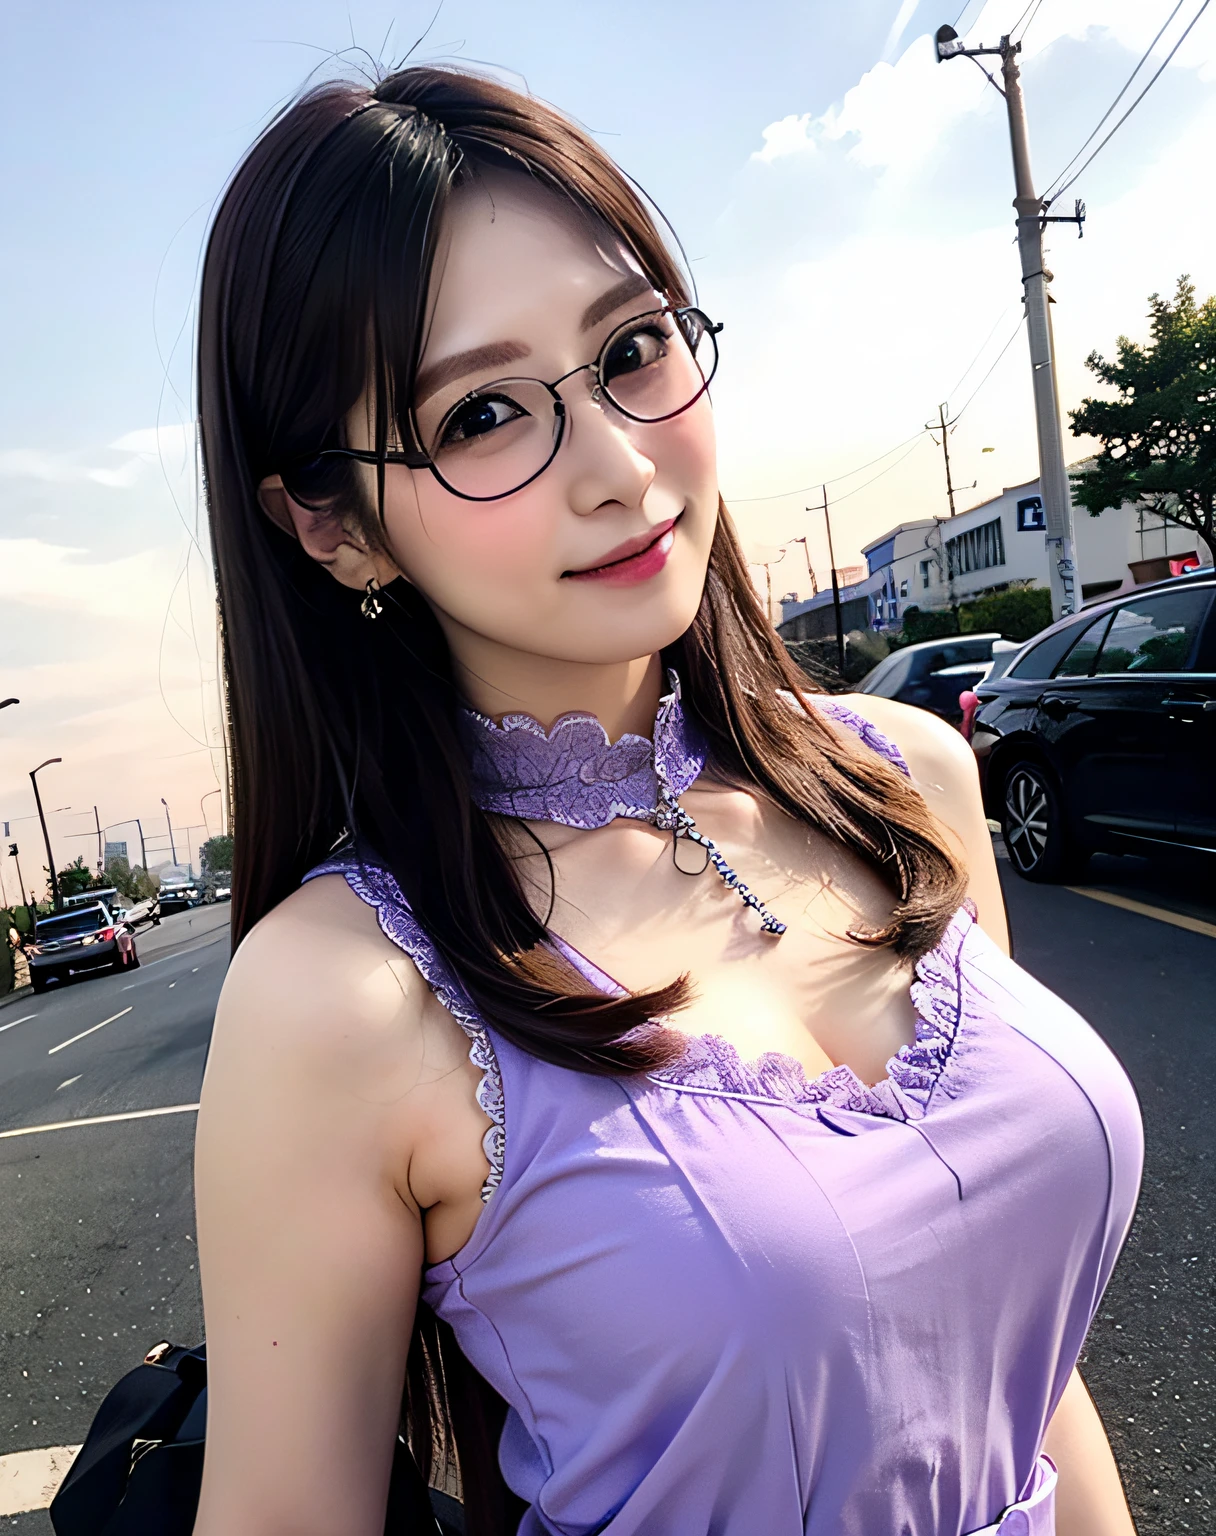 a woman posing on the calle corner with light purple dress on with anteojos on, mejor calidad, alta resolución, 8k, 1 chica, (pechos enormes), día, Brillante, exterior, (calle:0.8), (gente, multitudes:1), (vestido con ribetes de encaje:1.5, ropa morada:1.5, vestido púrpura de cuello alto:1.5, vestido sin mangas, Paños de color púrpura claro 1.5), espléndido, (anteojos, frente, pelo largo), hermoso cielo detallado, hermosos aretes, (pose dinámica:0.8), (parte superior del cuerpo:1.2), iluminación suave, viento, piel brillante, mirando al espectador, sonrisa, boca cerrada,